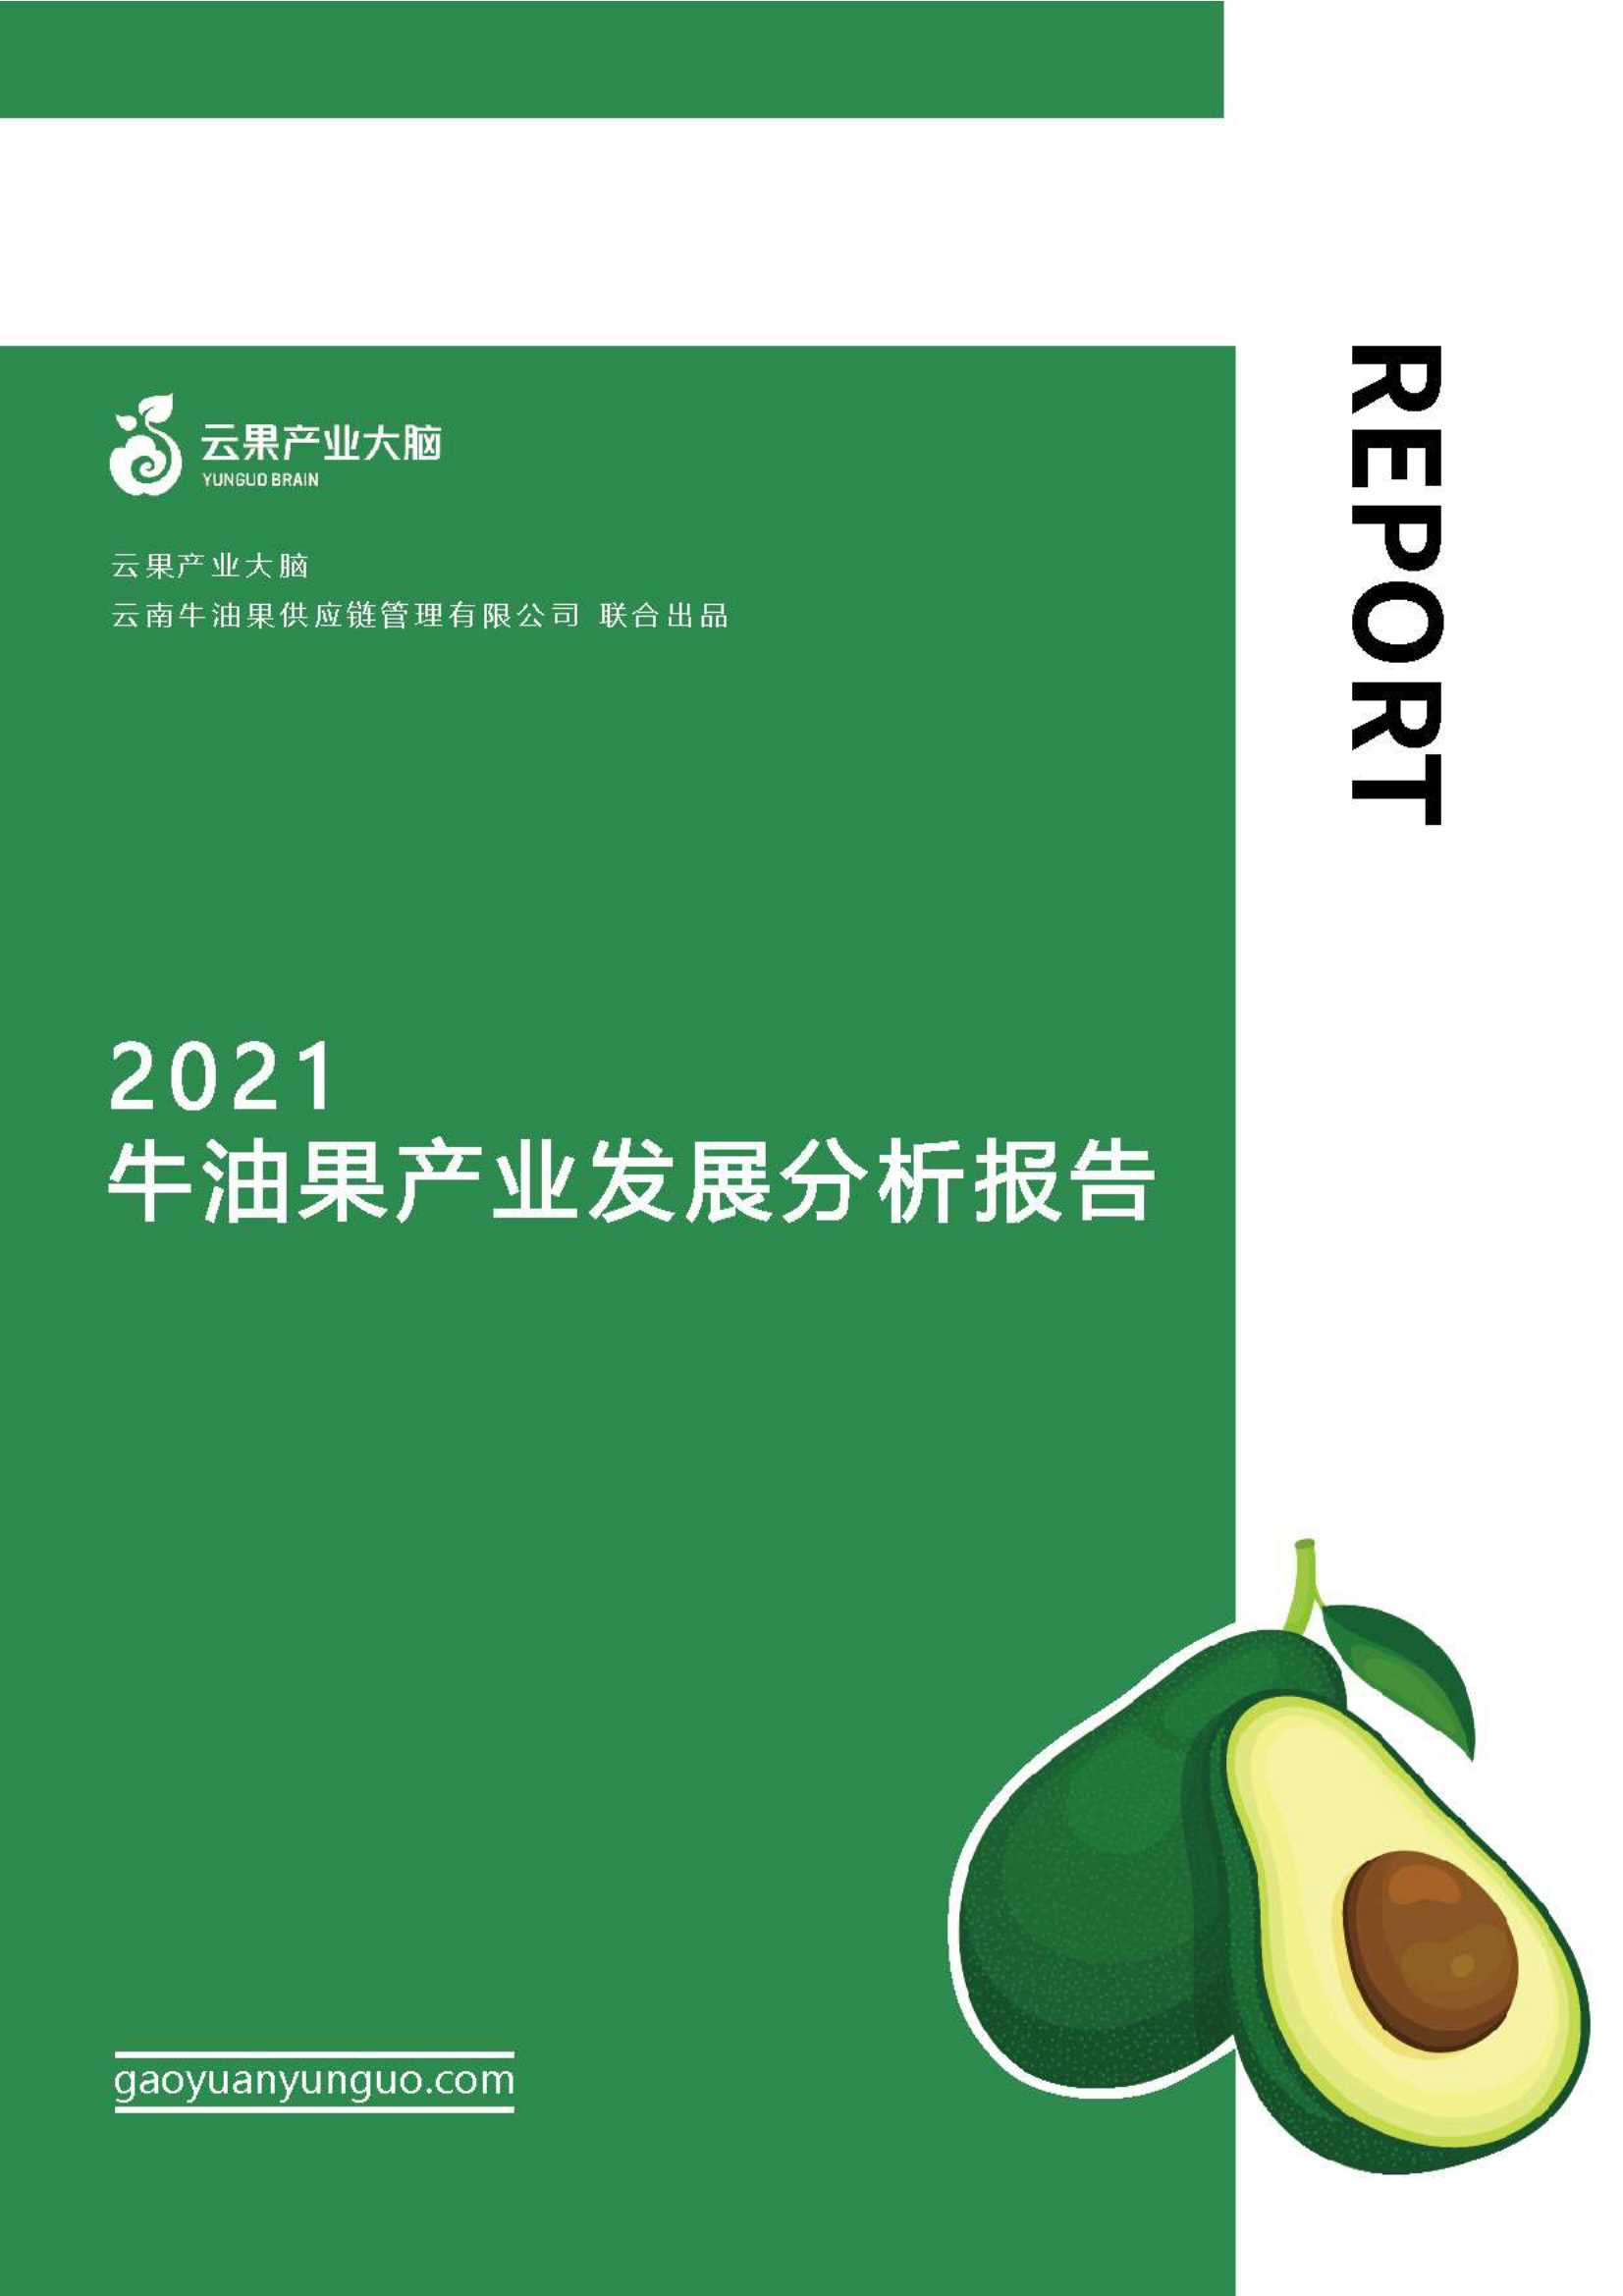 云果-2021牛油果产业发展分析报告-2021.11-26页